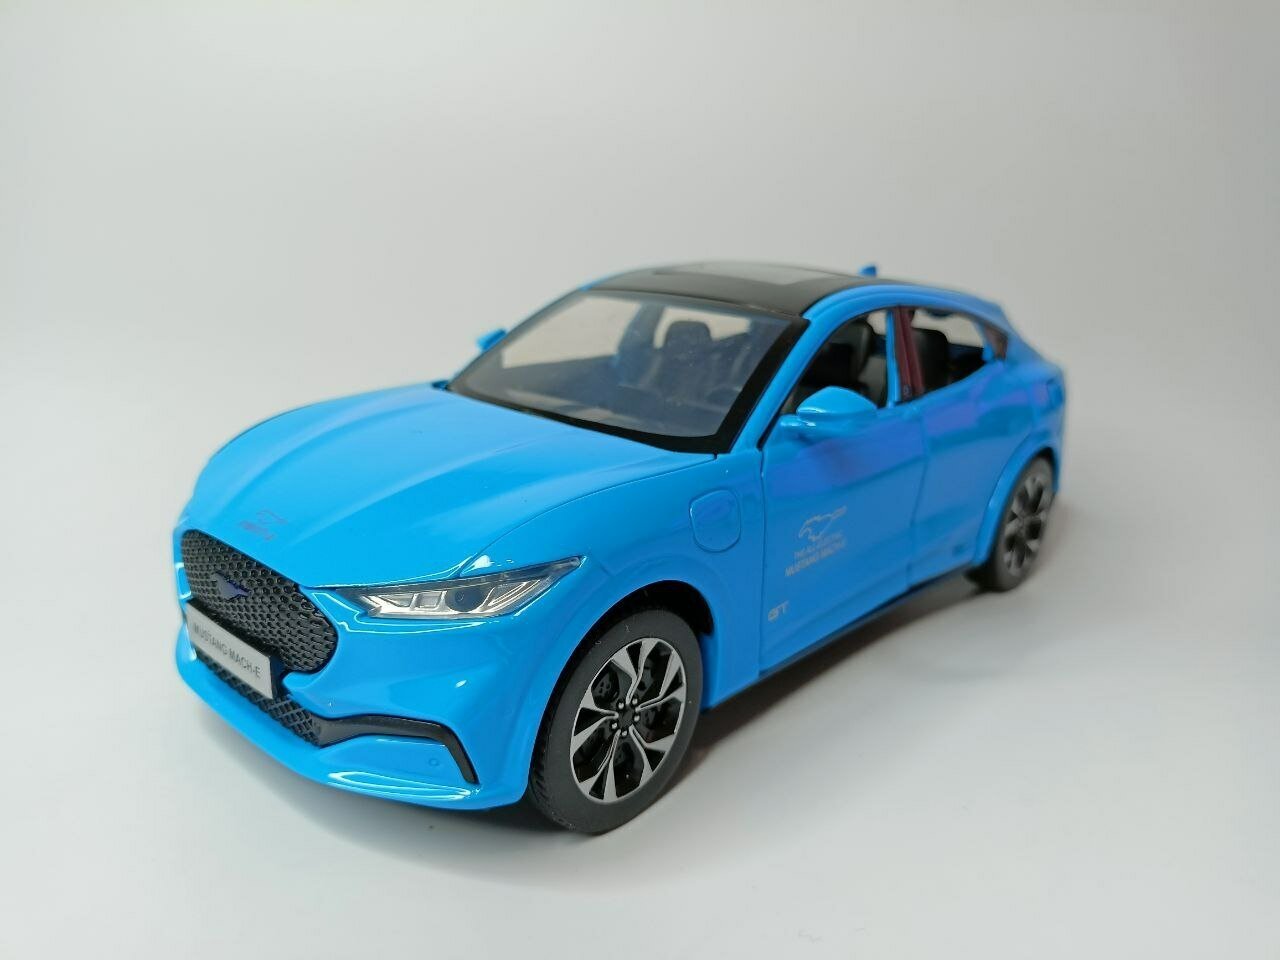 Коллекционная машинка игрушка металлическая Ford Mustang Mach-E для мальчиков масштабная модель 1:24 синяя